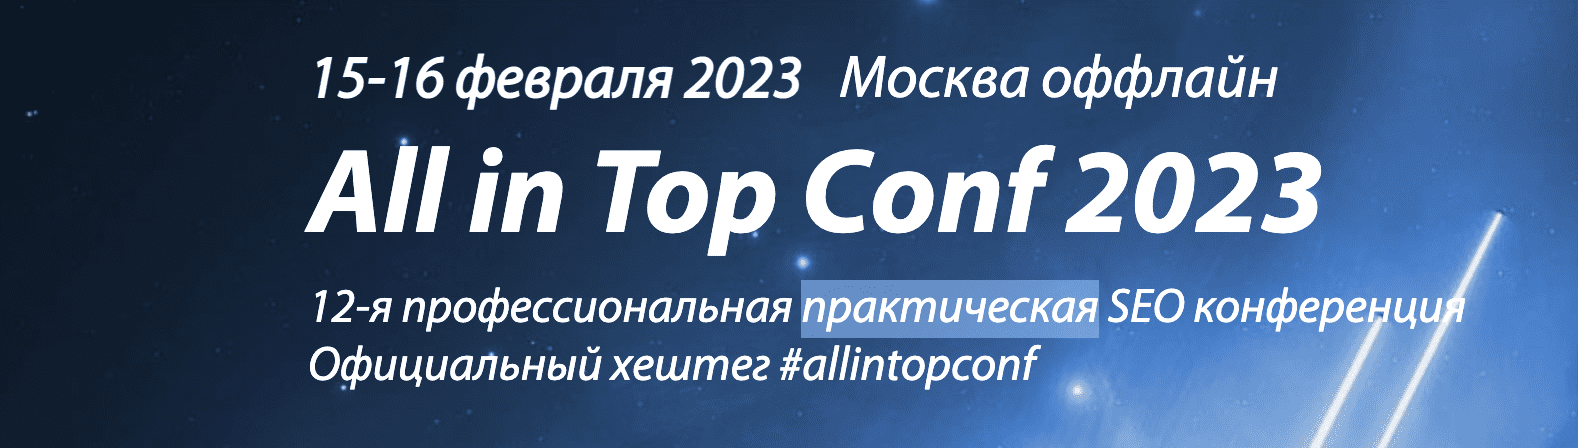  [М. Шакин, В. Ткачев, И. Горбачев и др.] All in Top Conf 2023 - профессиональная практическая...png